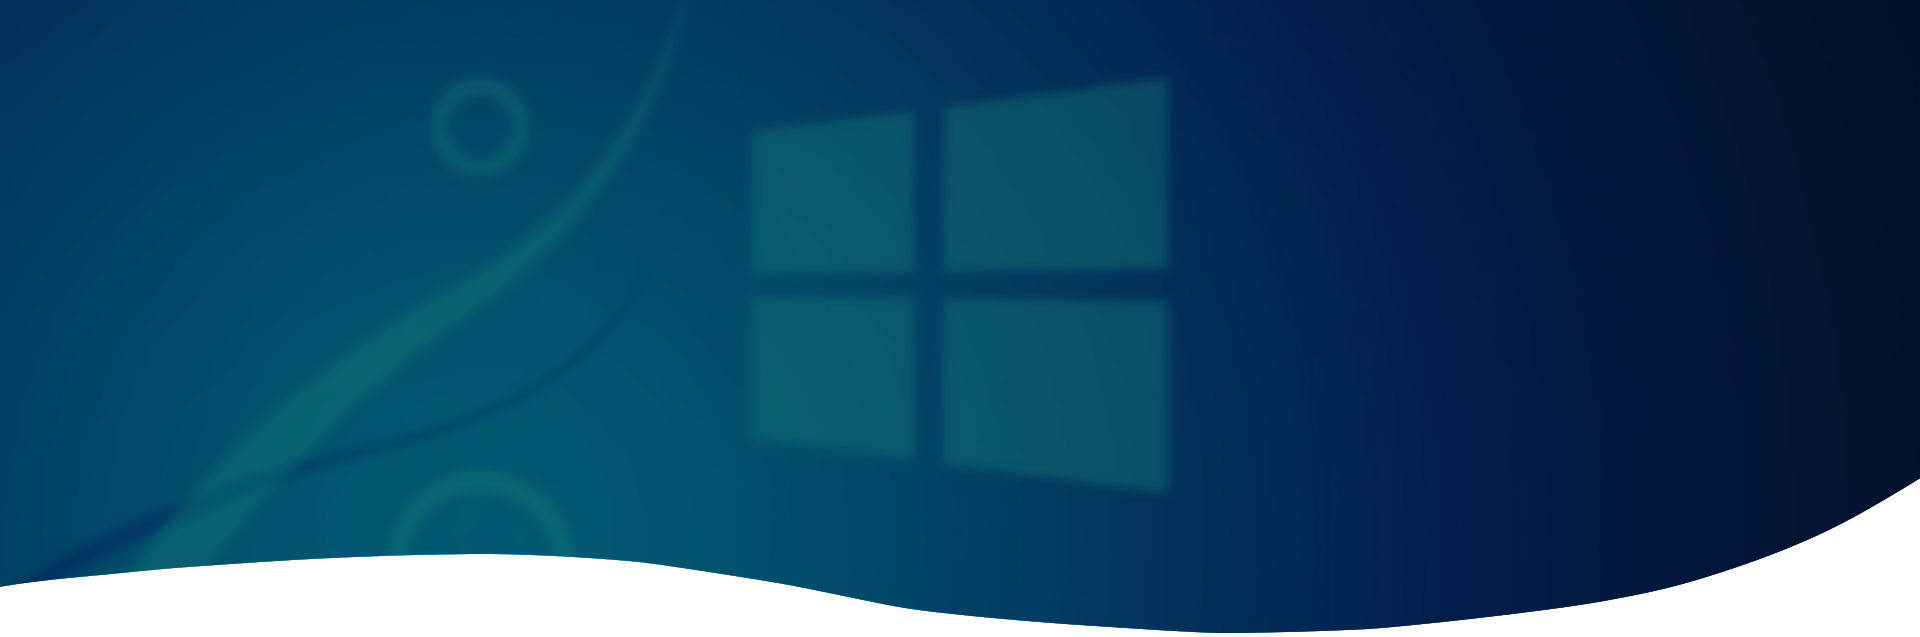 Windows 8 background banner